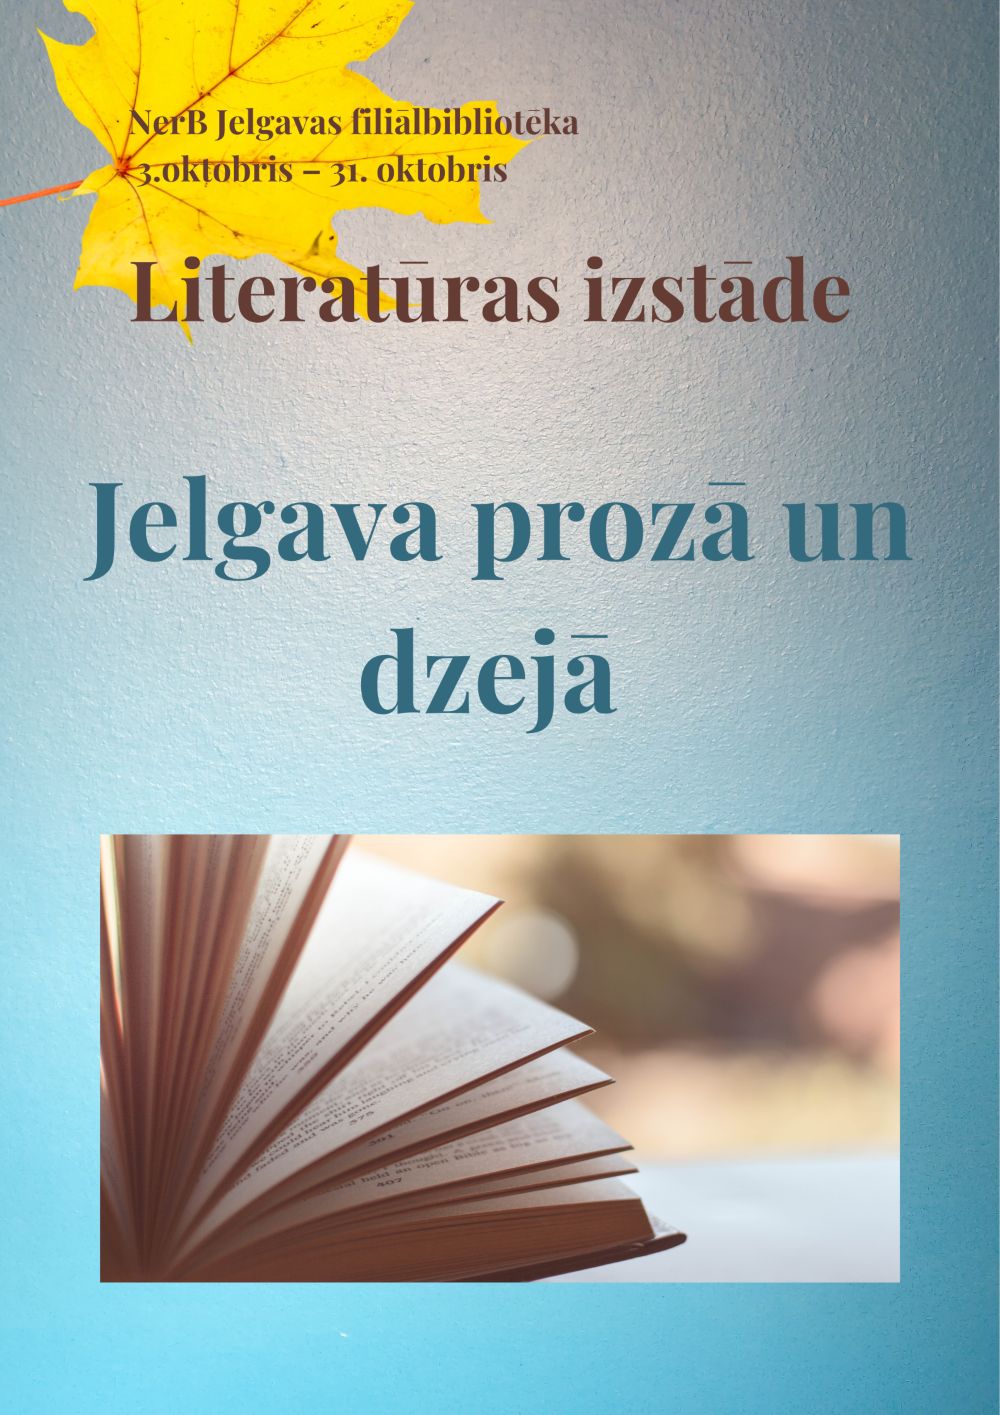 Plakāts izstādei literatūras izstādi “Jelgava prozā un dzejā”